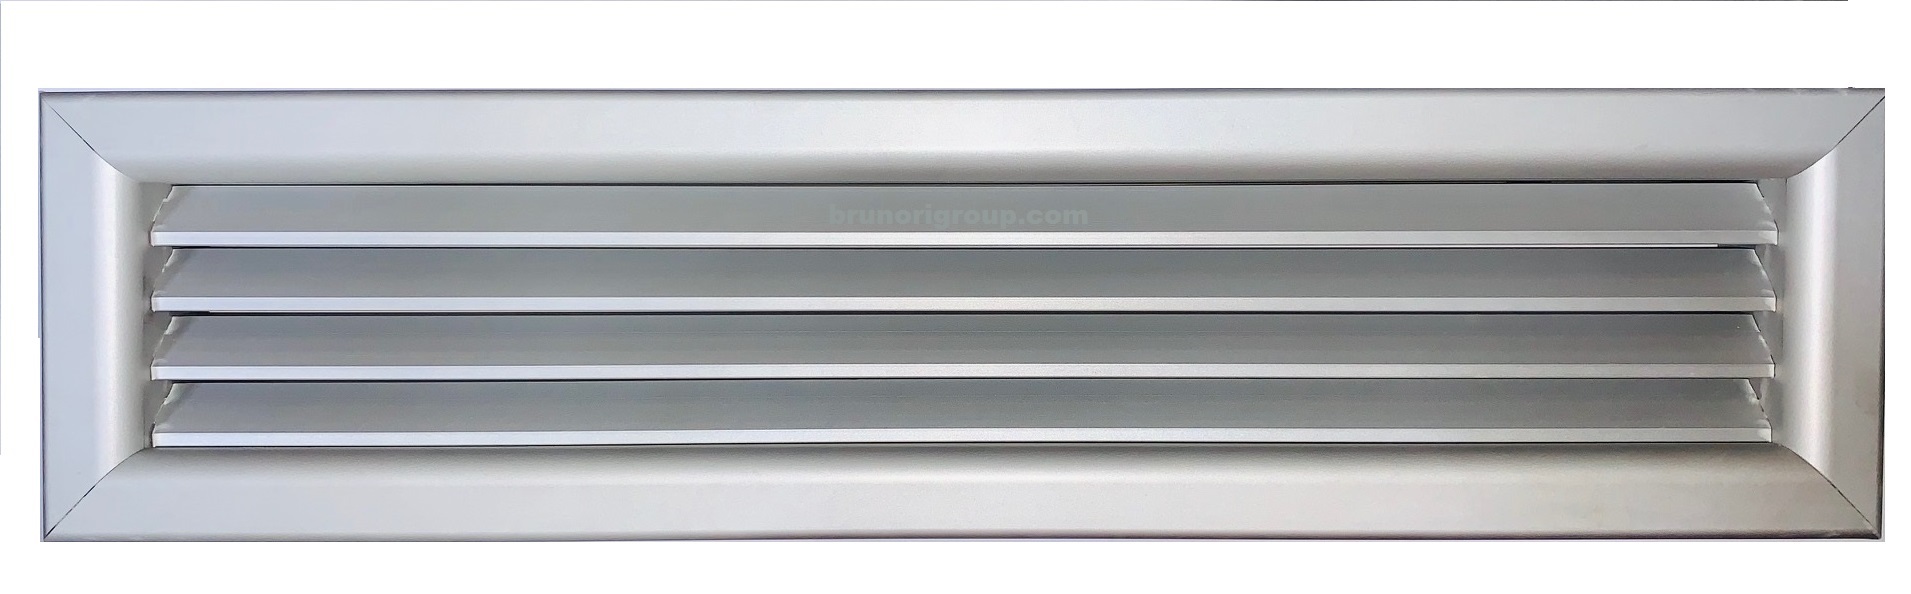 Griglia ripresa aria calda fredda alluminio portafiltro 500x300 mm bianca 